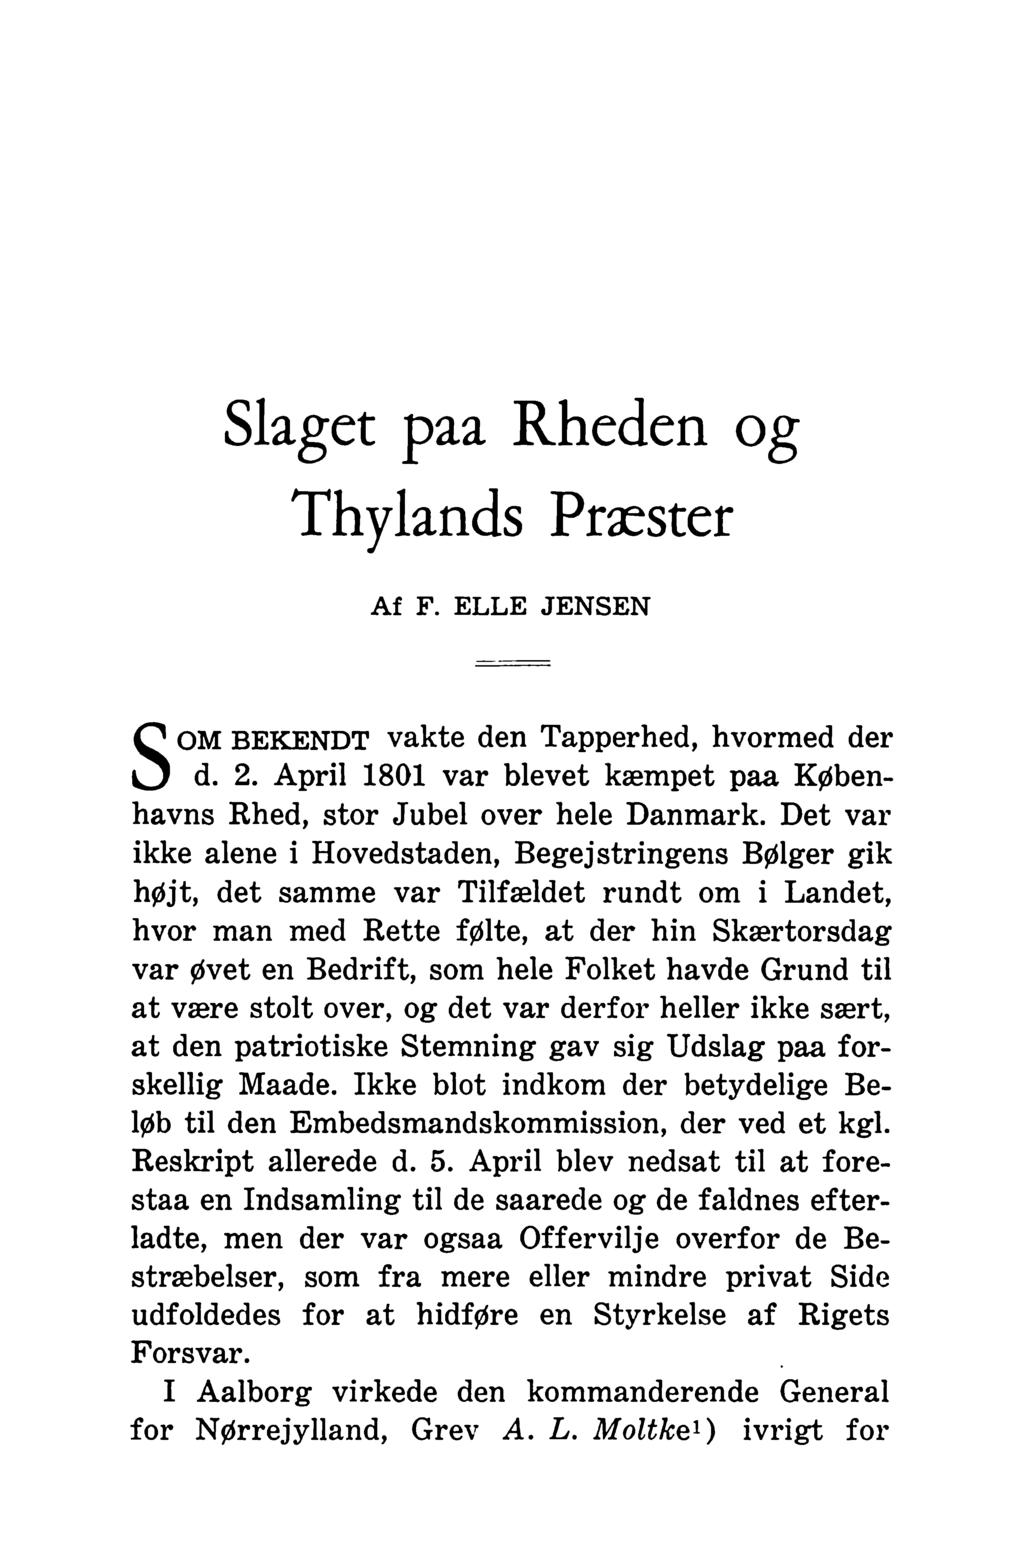 Slaget paa Rheden og Thylands Præster Af F. ELLE JENSEN S OM BEKENDT vakte den Tapperhed, hvormed der d. 2. April 1801 var blevet kæmpet paa Københavns Rhed, stor Jubel over hele Danmark.